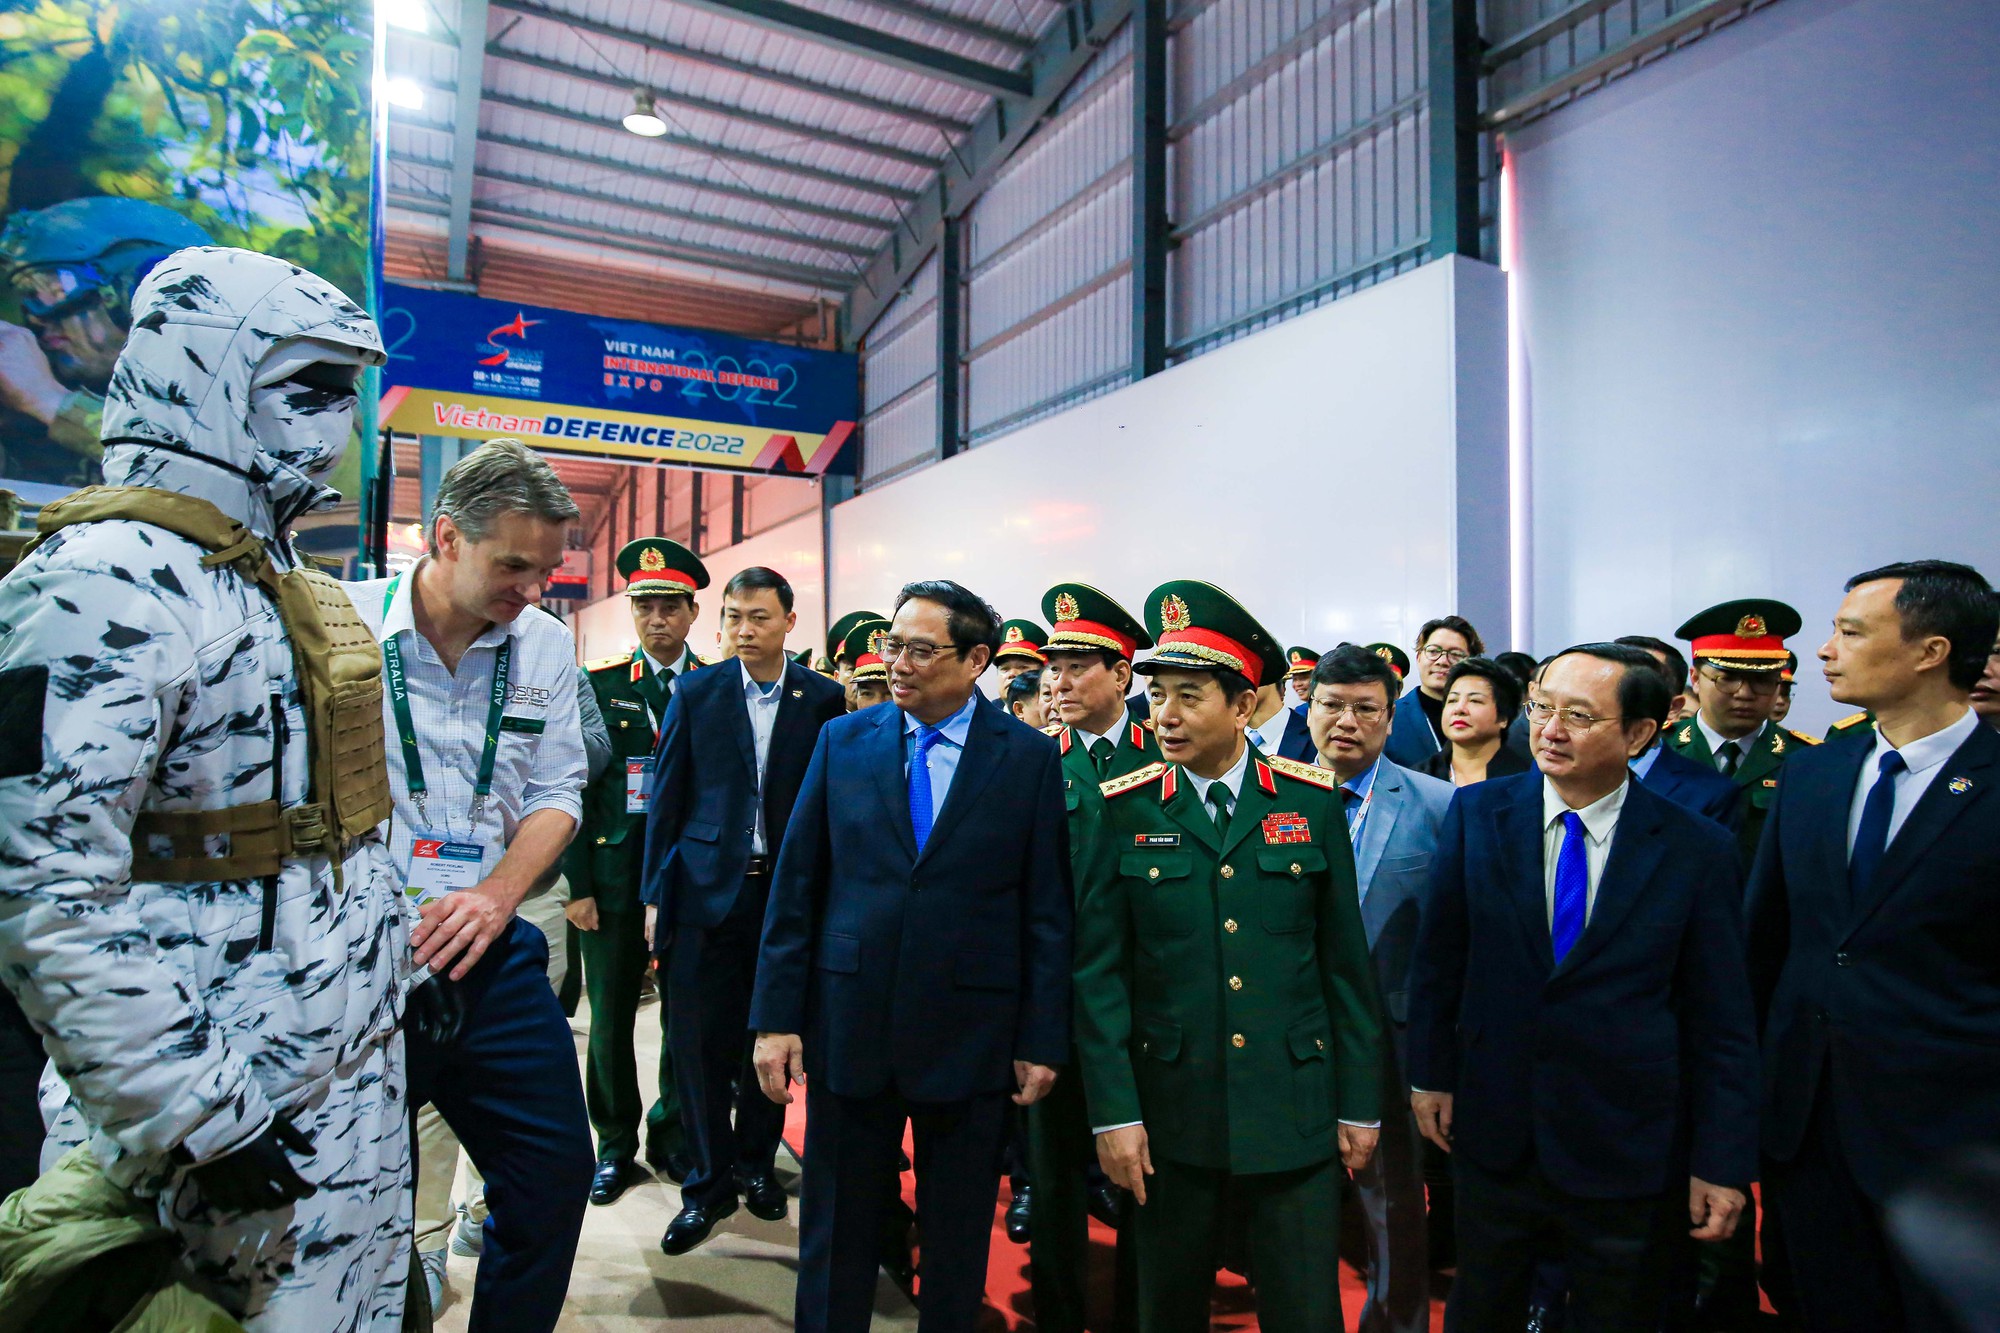 Cận cảnh dàn vũ khí, khí tài quân sự hiện đại ở triển lãm Quốc phòng Việt Nam 2022 - Ảnh 10.